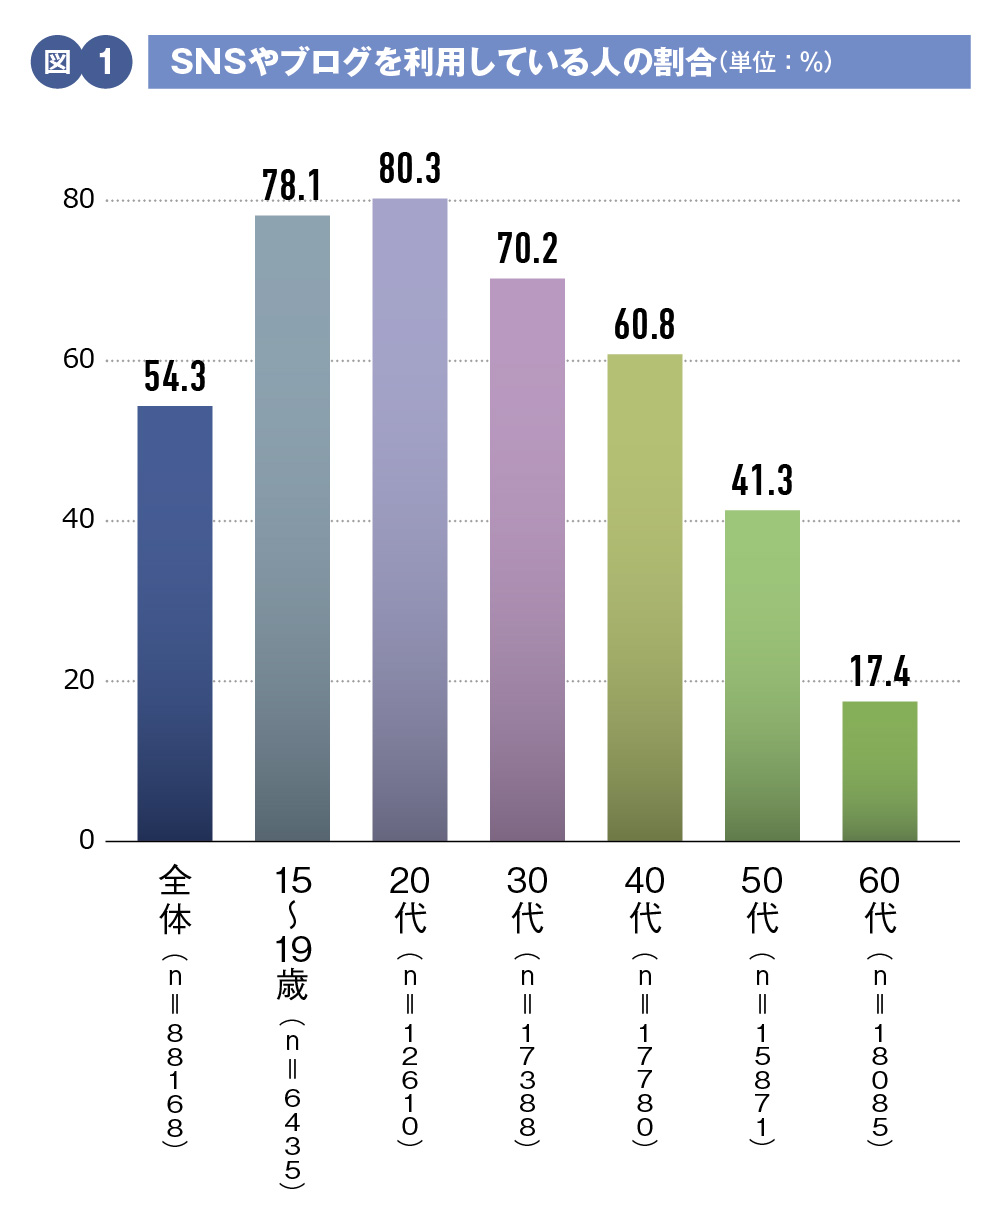 【図1】SNSやブログを利用している人の割合